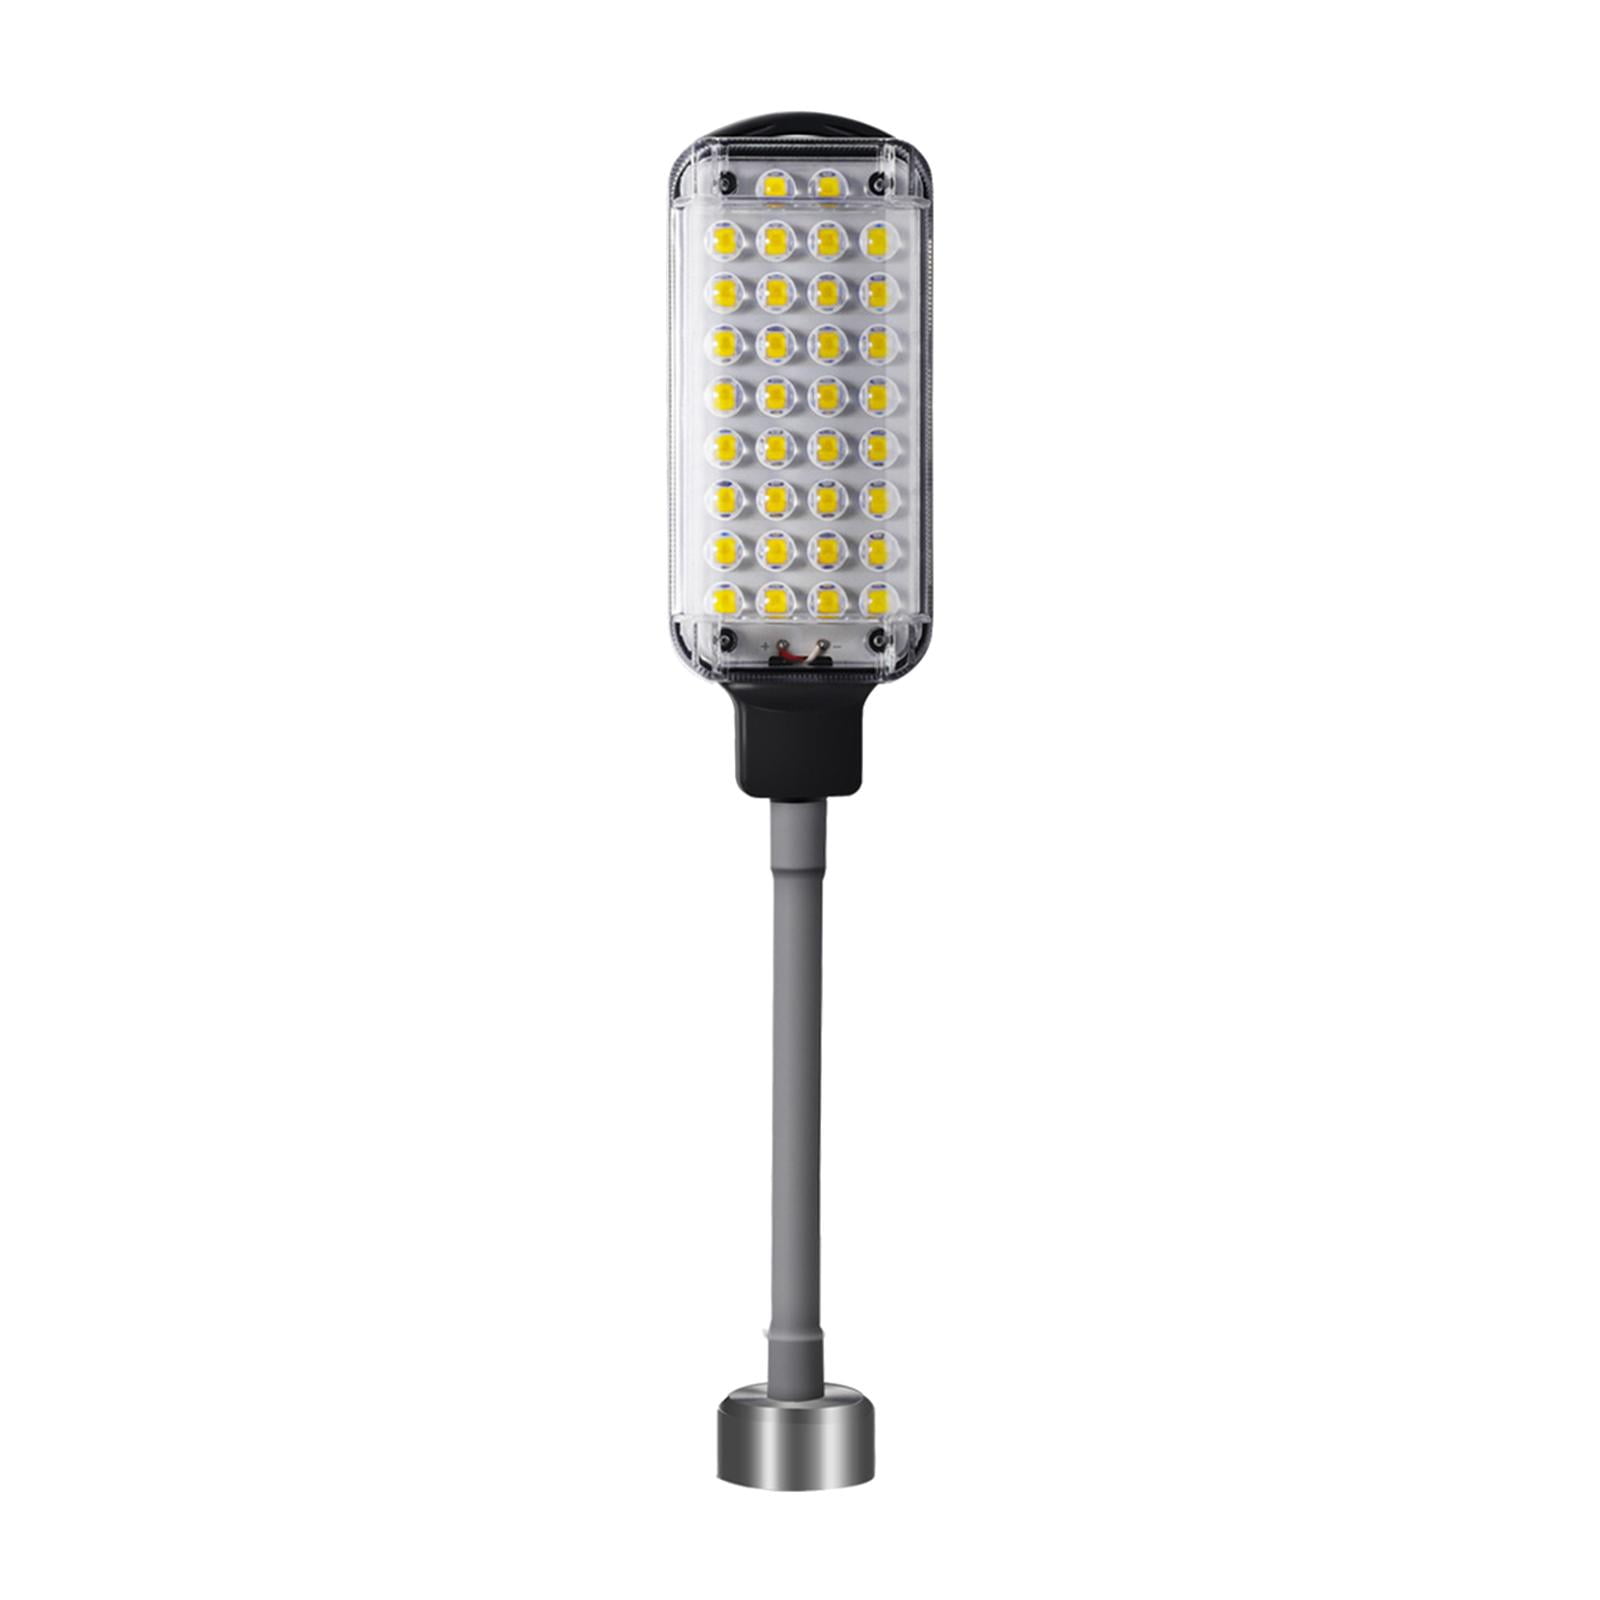 LED Work Light Hand Bending Flashlight Inspection Magnetic Tensile Night Lamp 